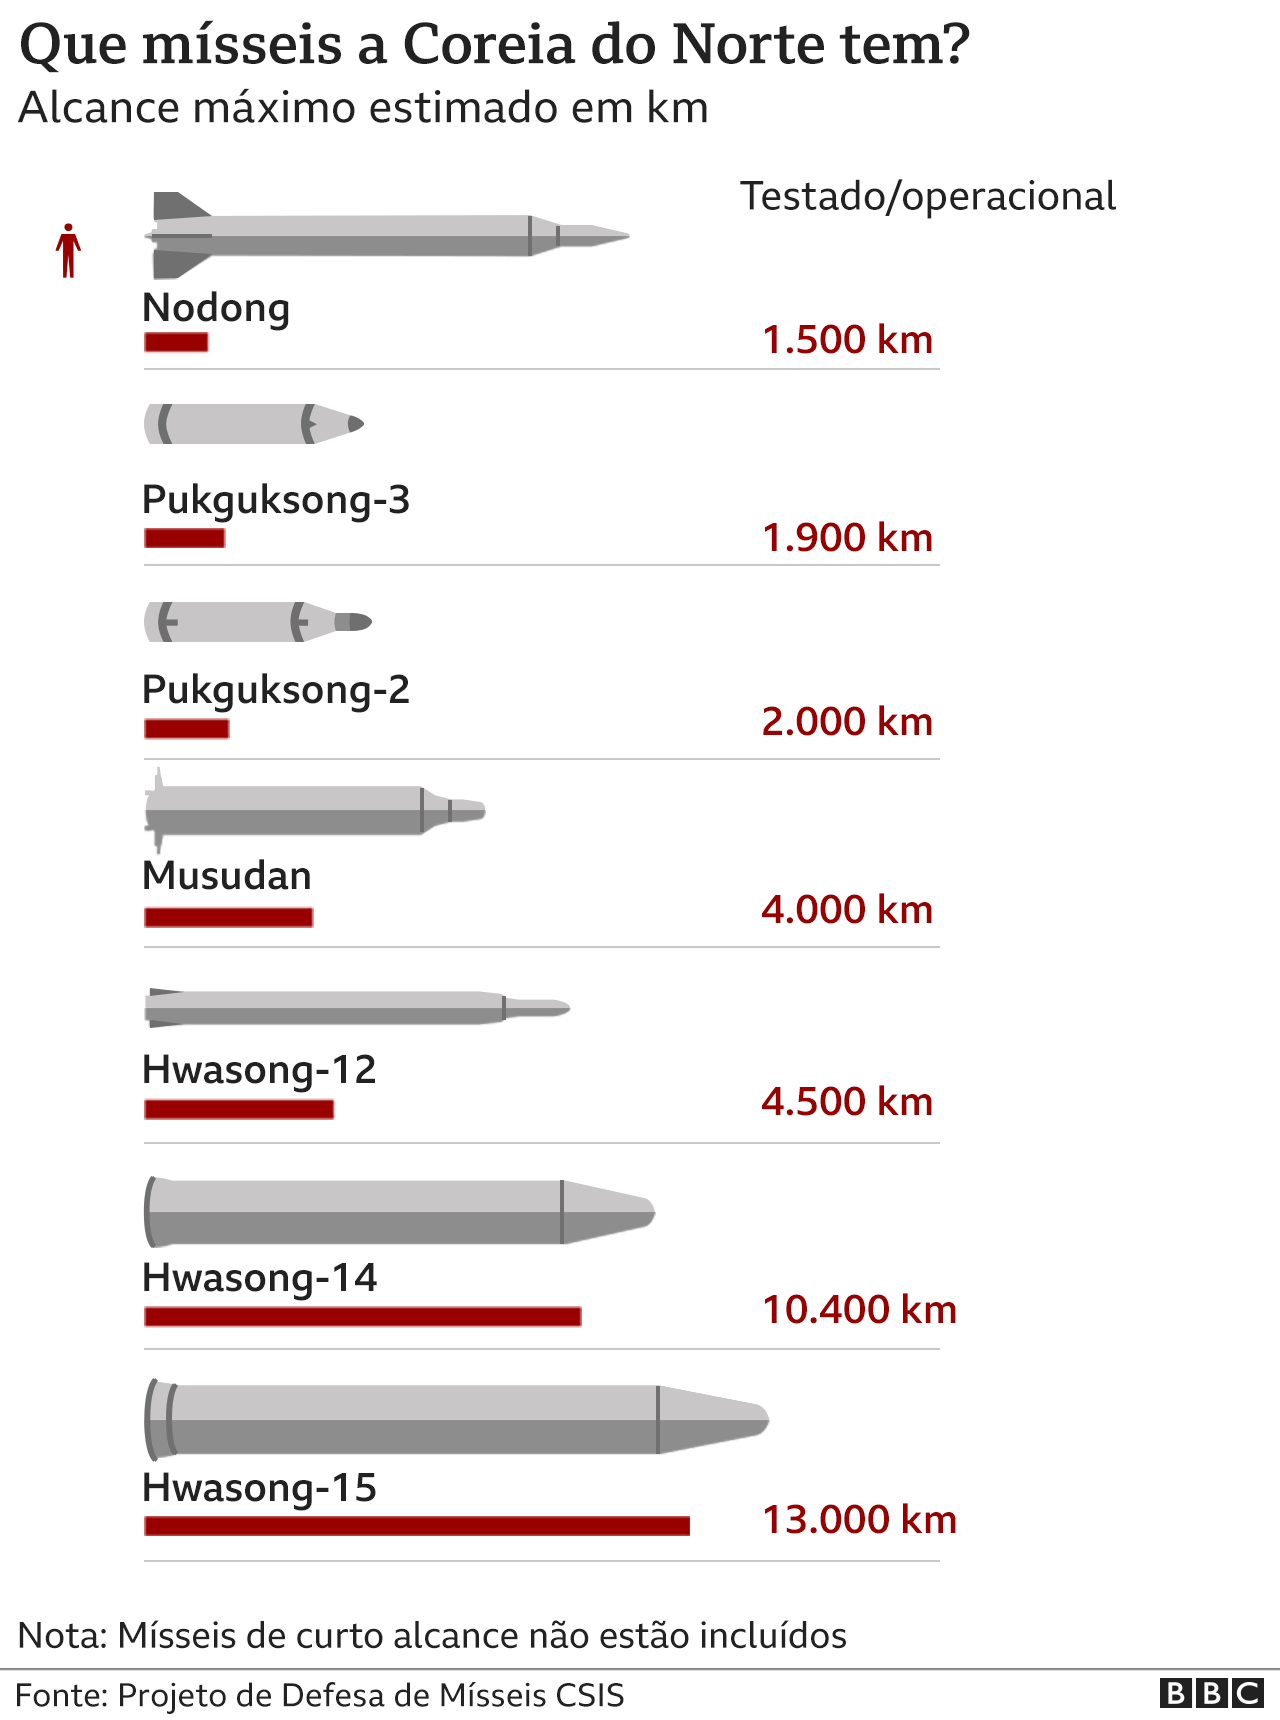 Infográfico faz comparação em relação ao alcance dos mísseis em poder da Coreia do Norte (Foto: BBC News)